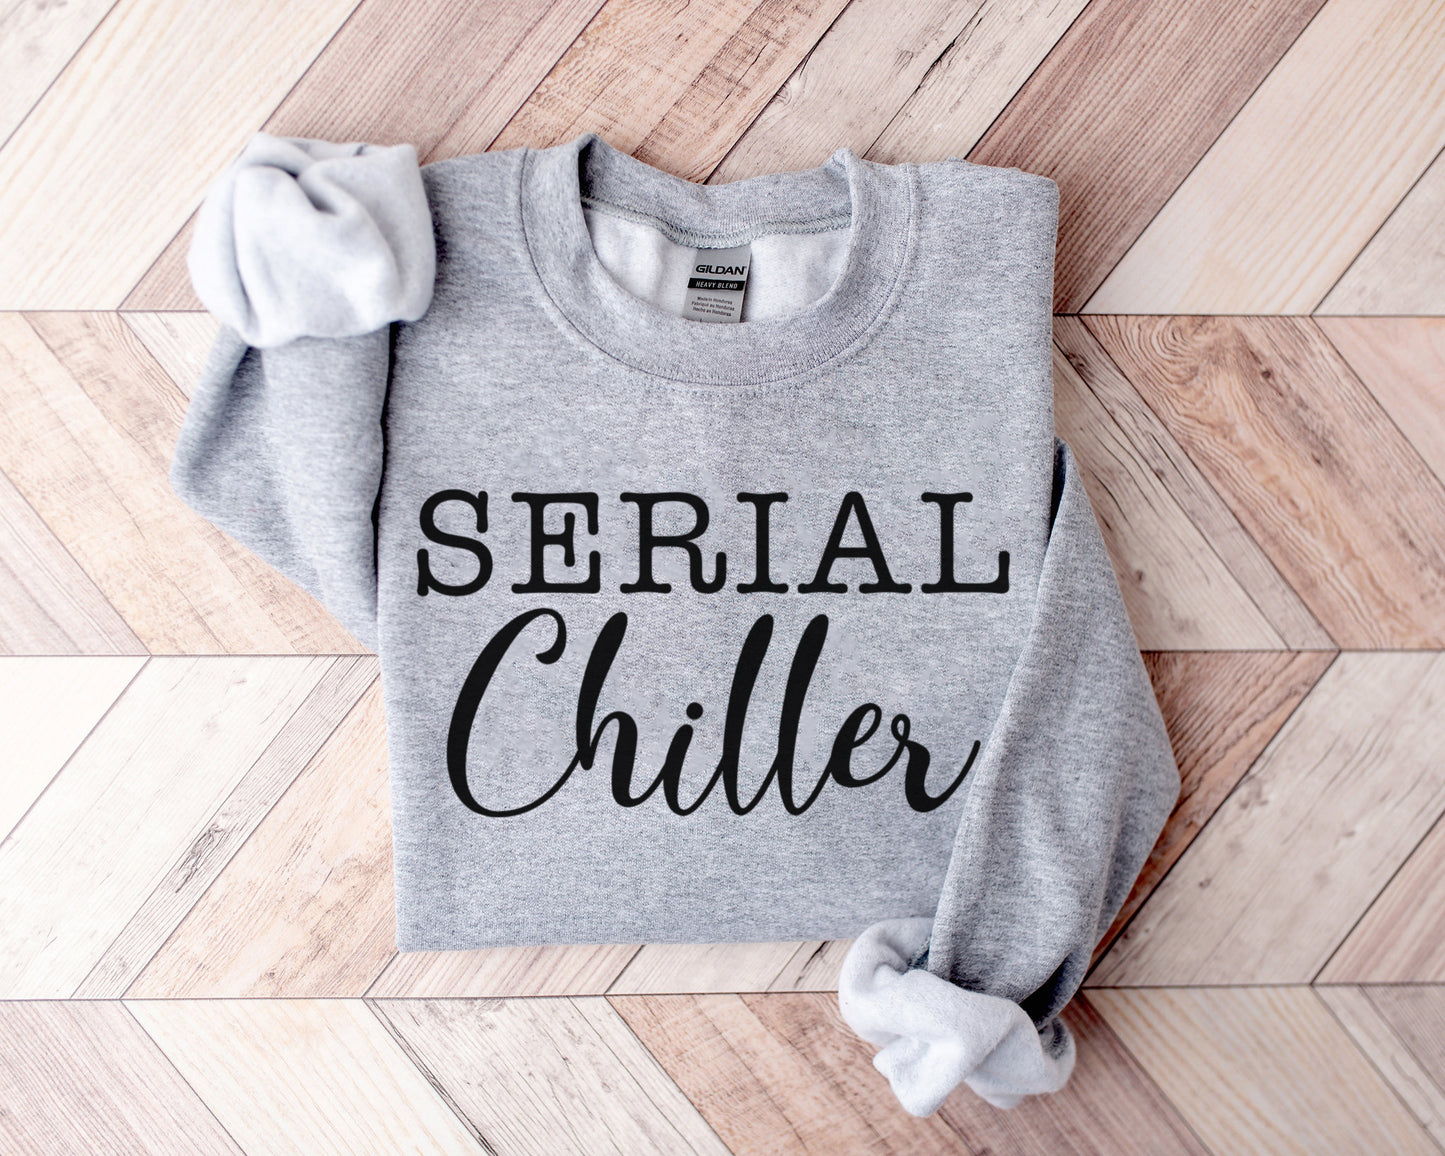 Serial Chiller Sweatshirt